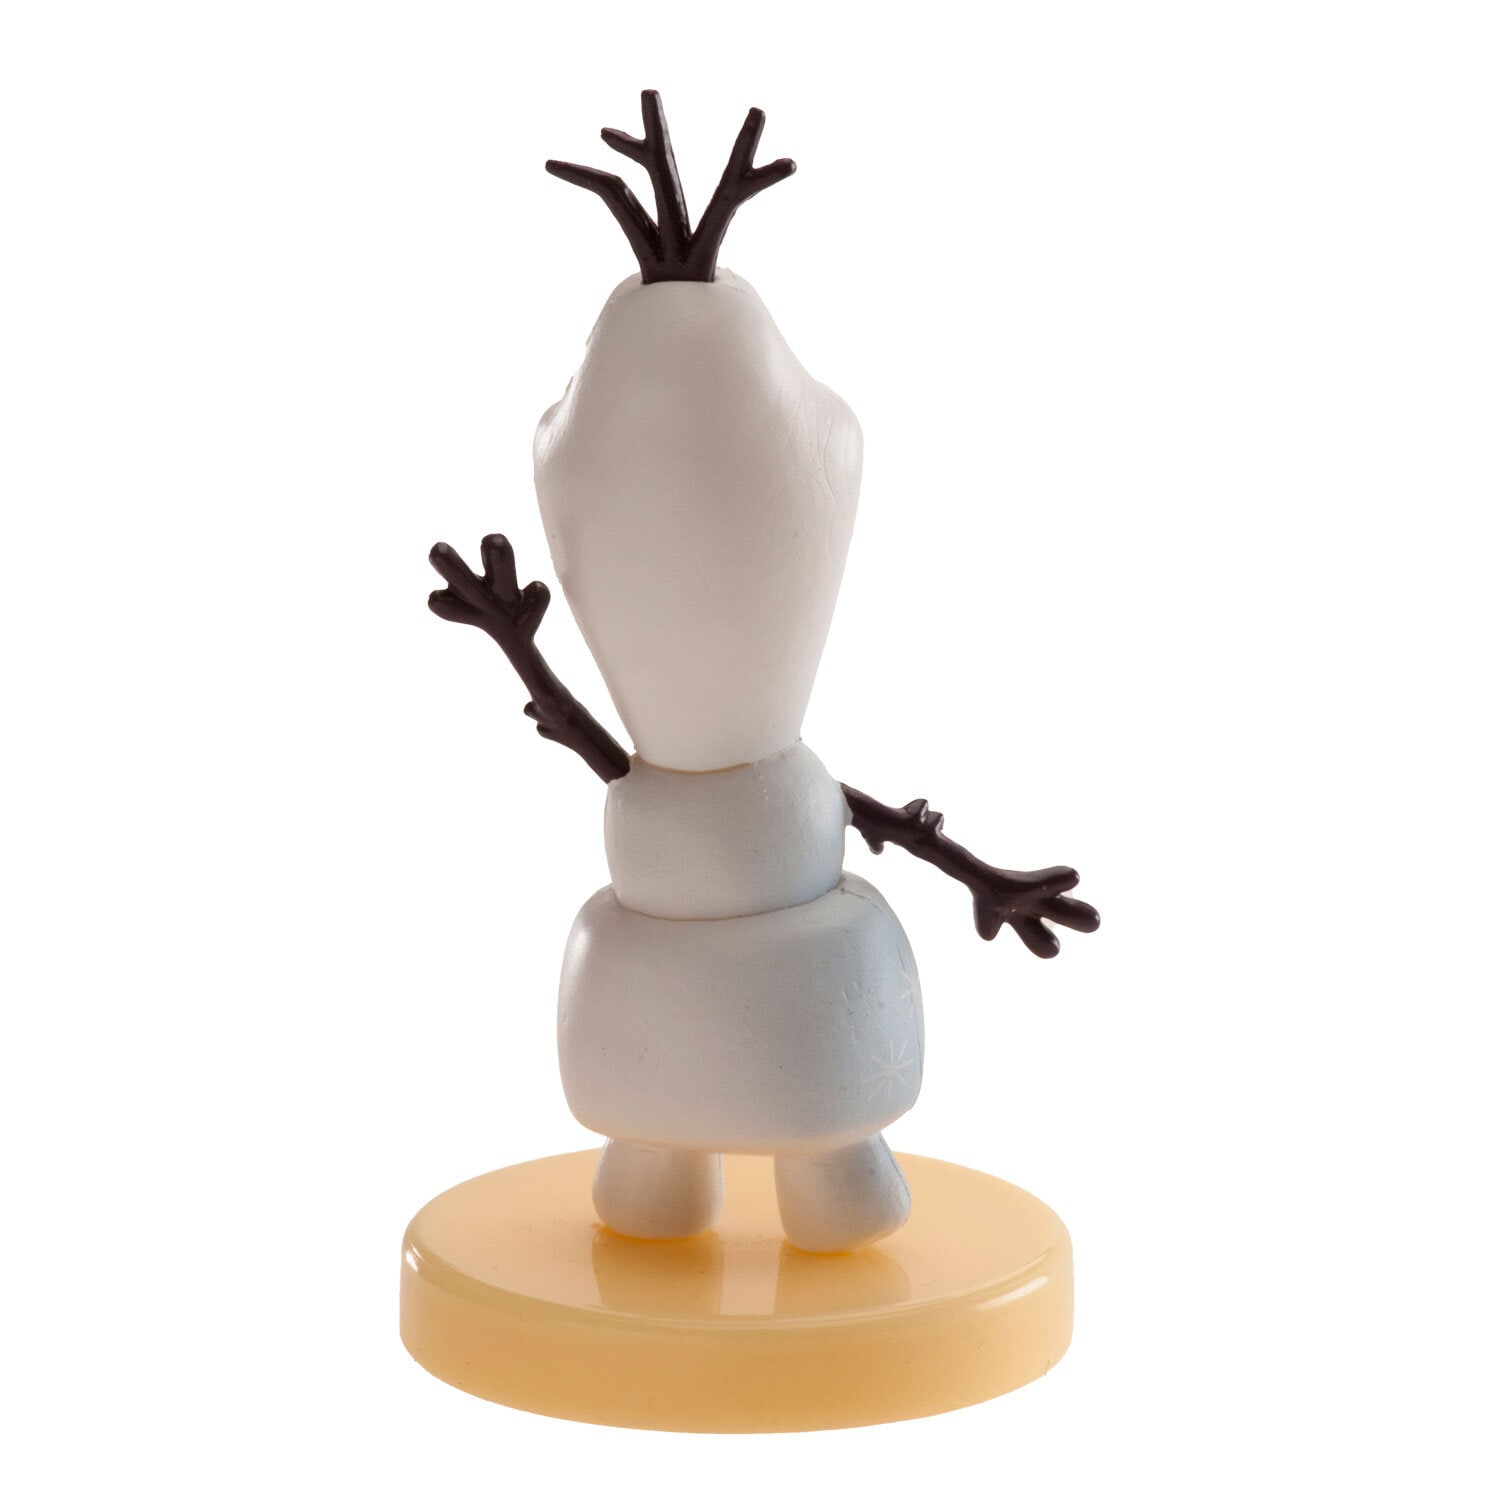 Tortenfigur Frozen 2, Olaf 6 cm